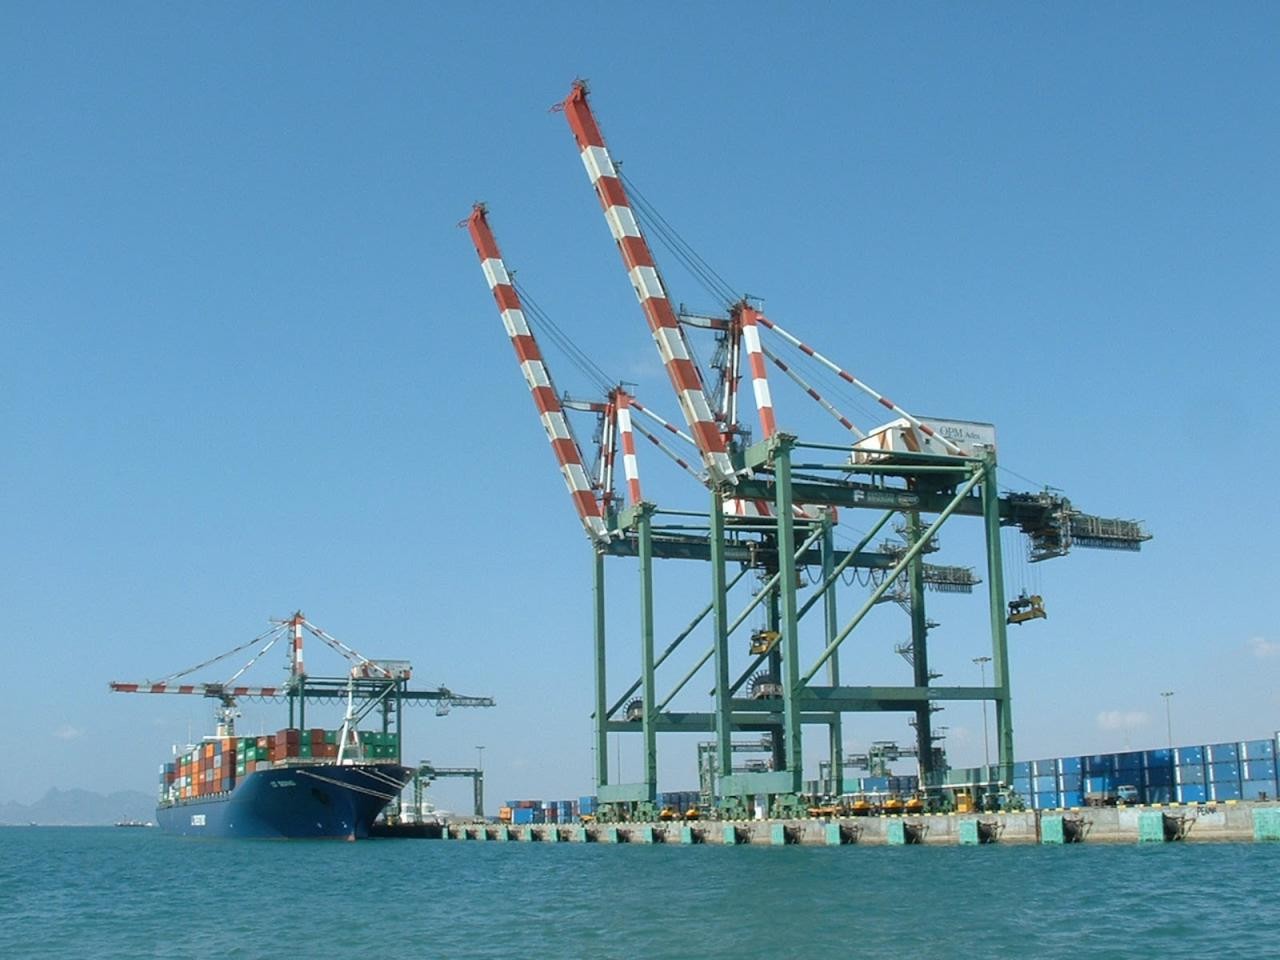 اللجنة الاقتصادية تقر آليات شحن وتنظيم الواردات إلى اليمن